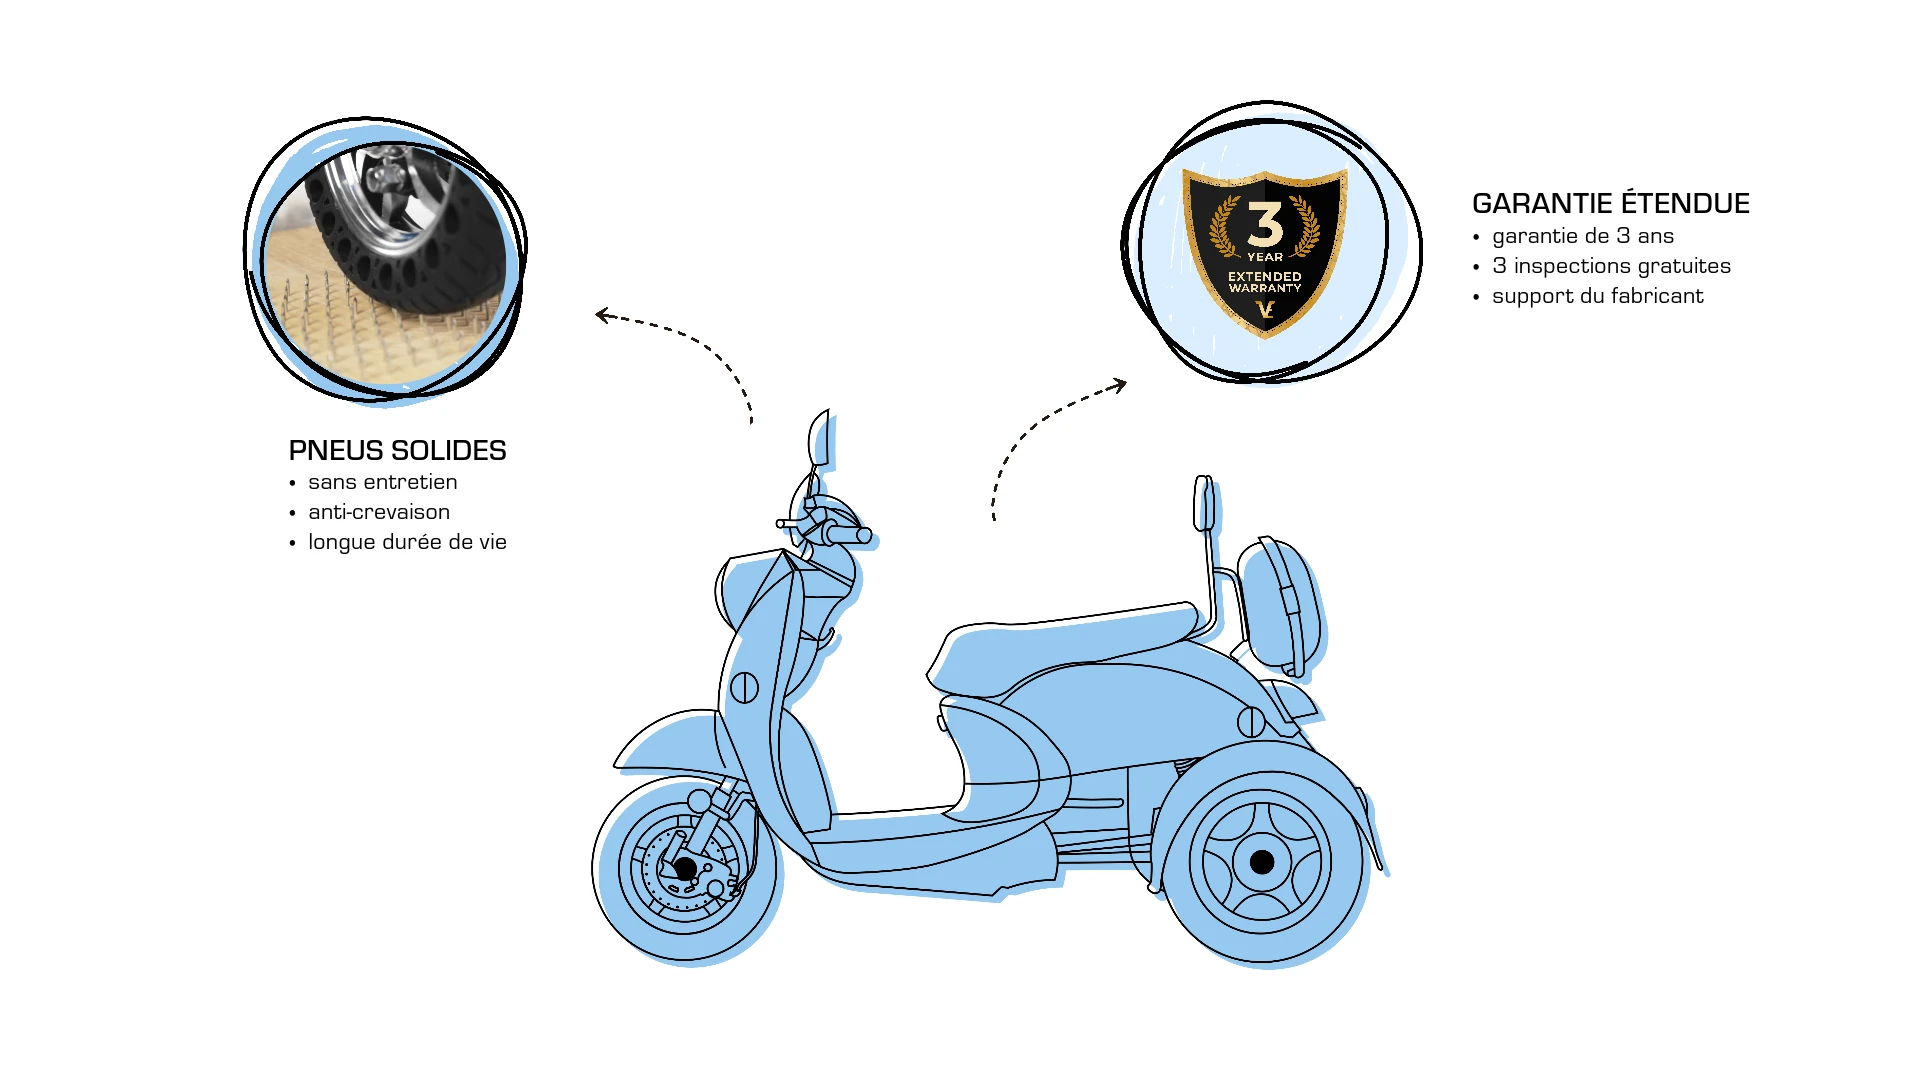  Extras pour scooter de mobilité Veleco ZT63, mises à niveau, pneus de scooter solides, garantie prolongée